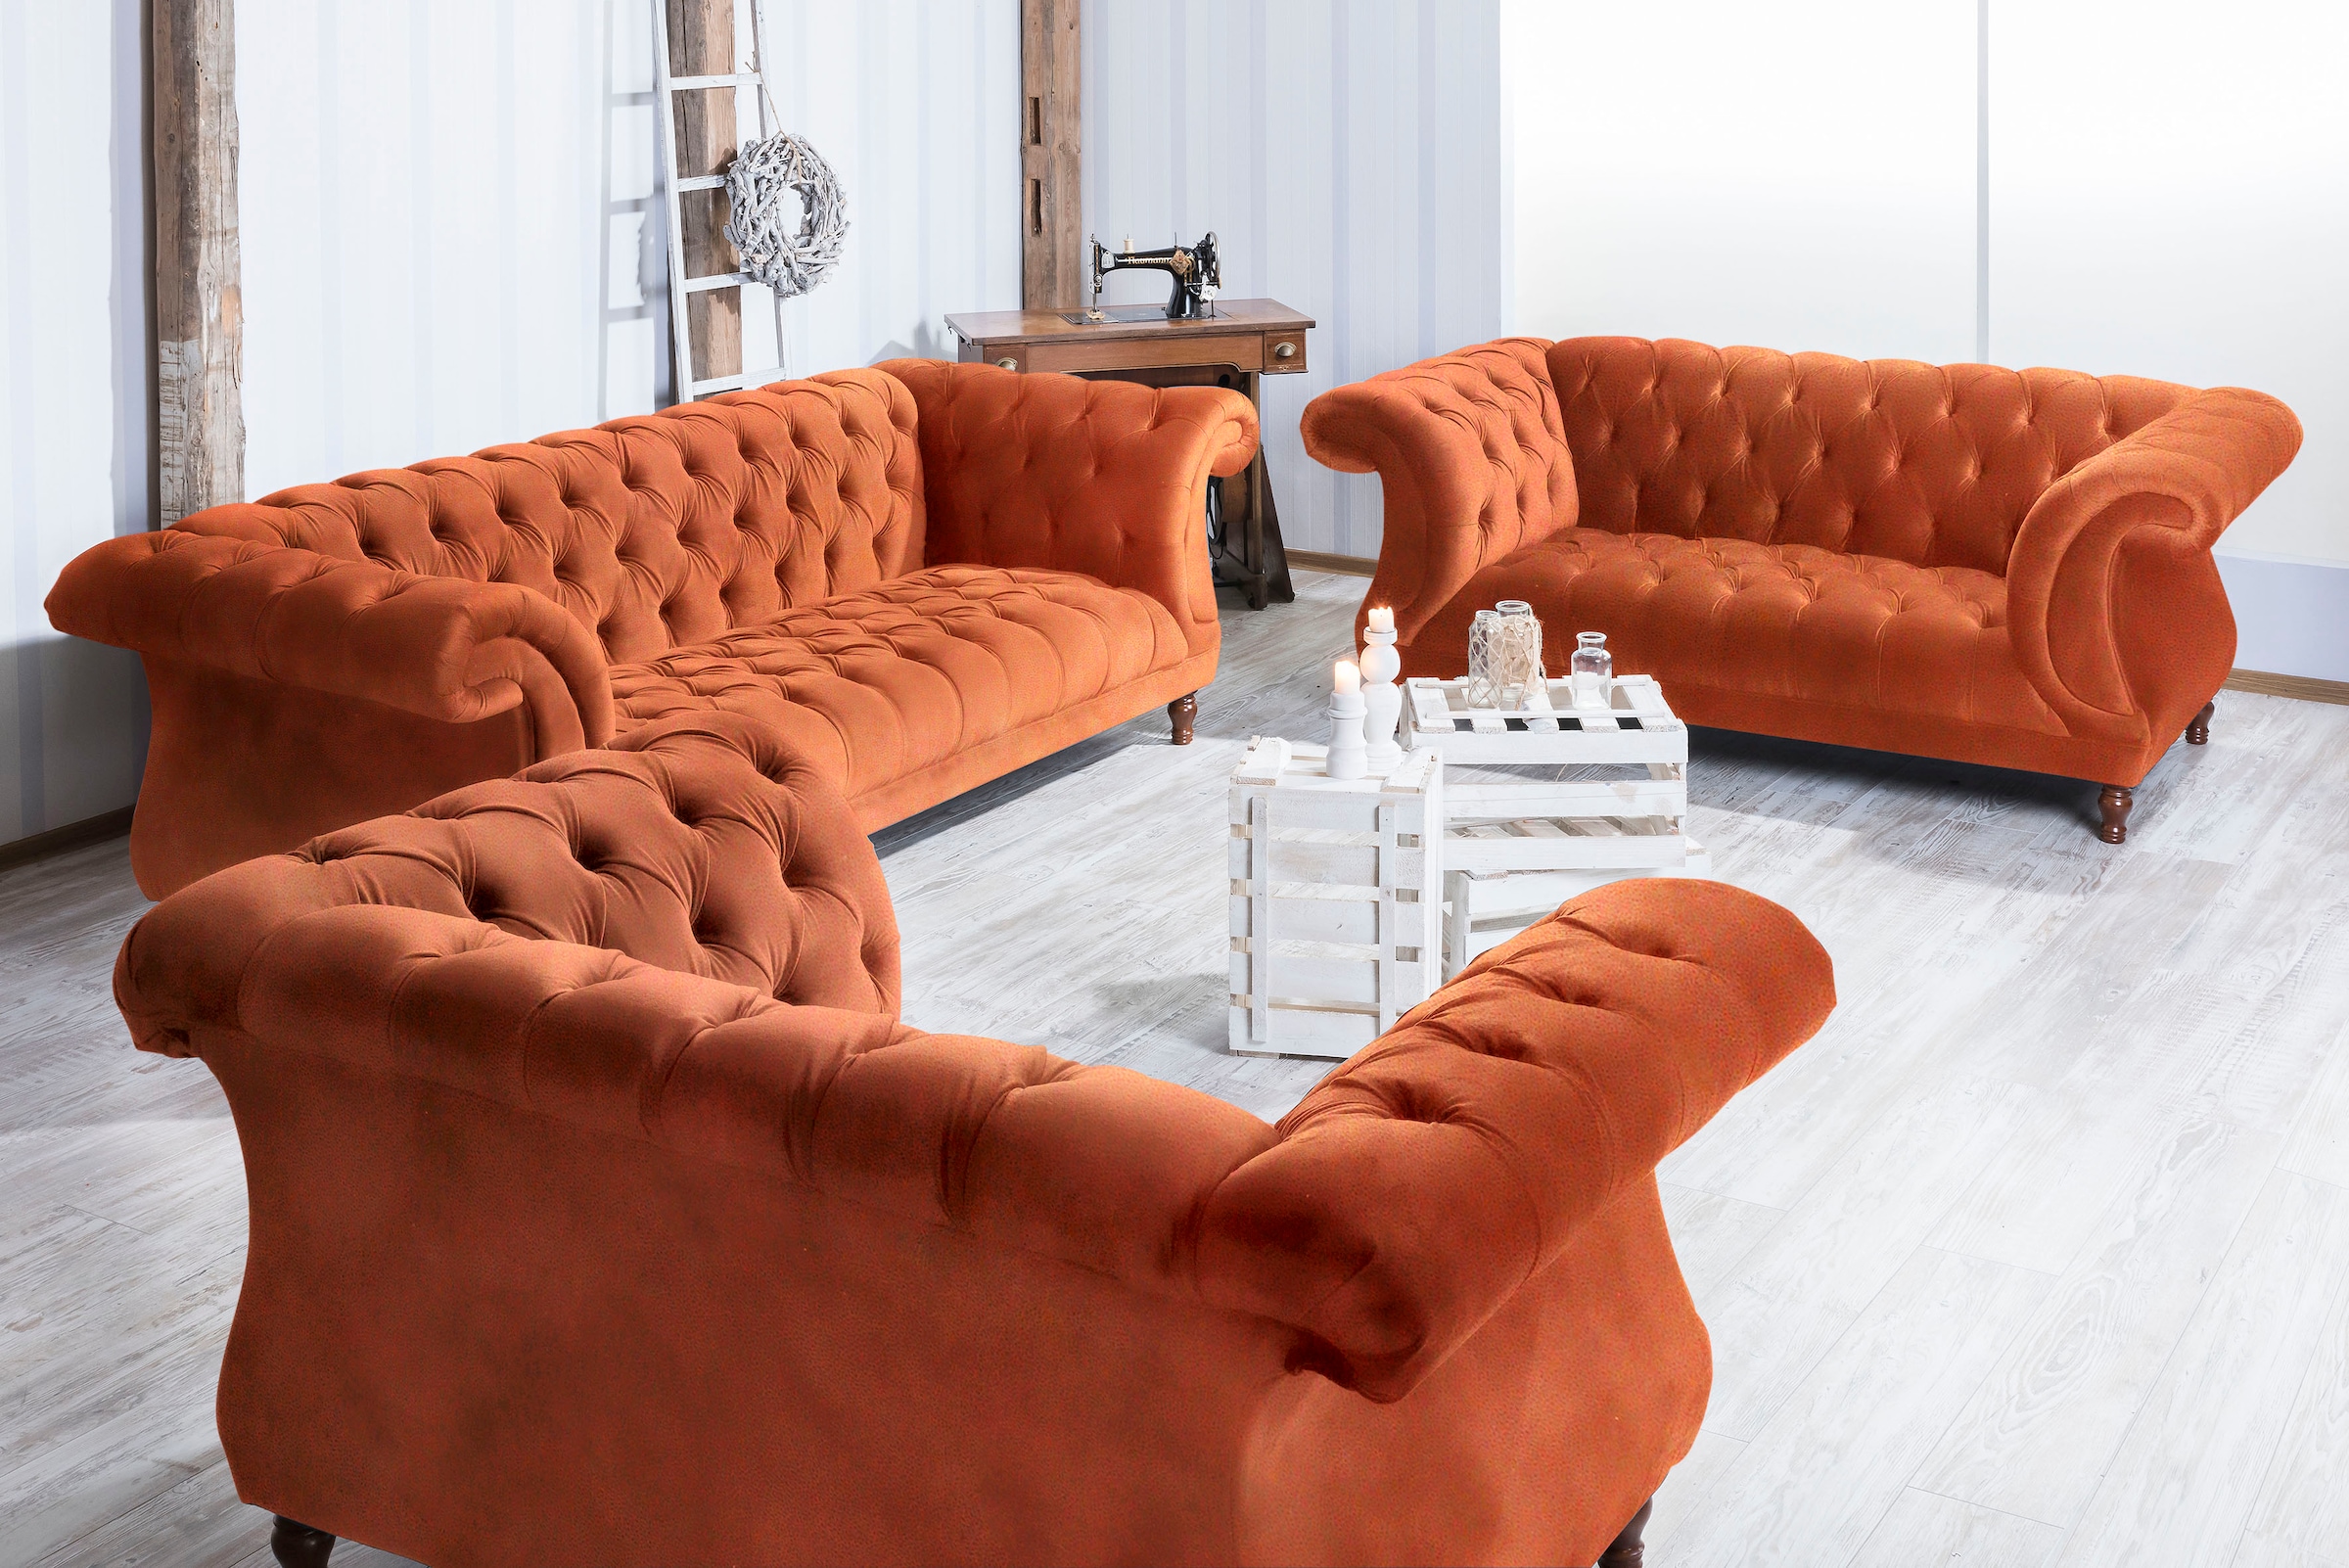 Max Winzer® Chesterfield-Sofa »Isabelle«, Knopfheftung & gedrechselten Füßen in Buche Nussbaum, Breite 260 cm